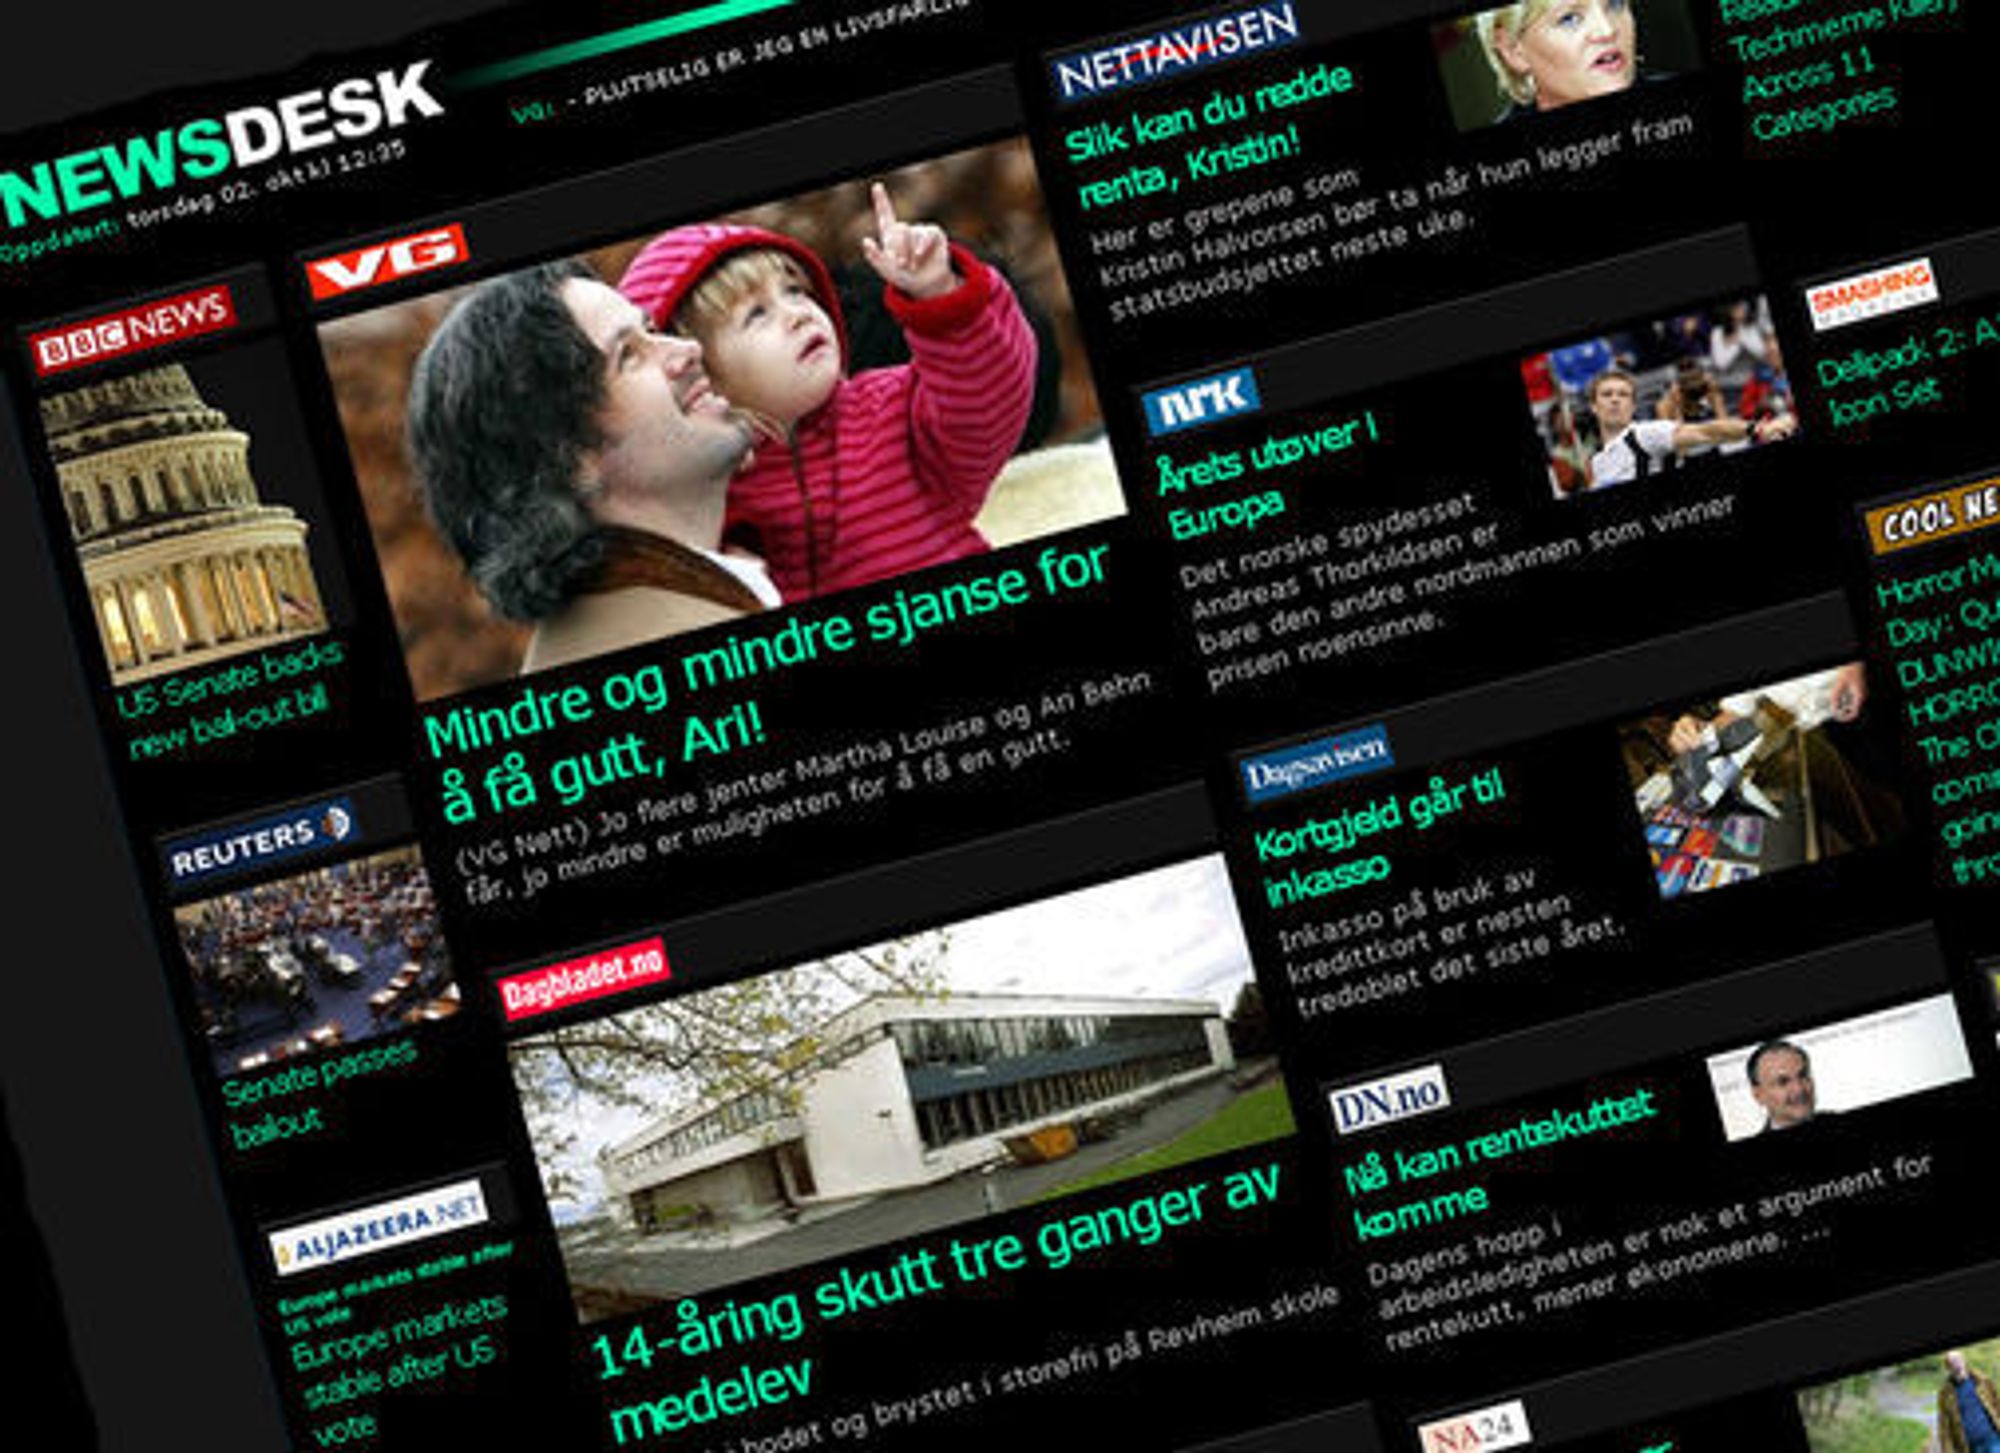 iPhone-utgaven av NewsDesk henter informasjonen sin fra NewsWeb-serveren, og innholdet er også tilgjengelig gjennom en vanlig webside.